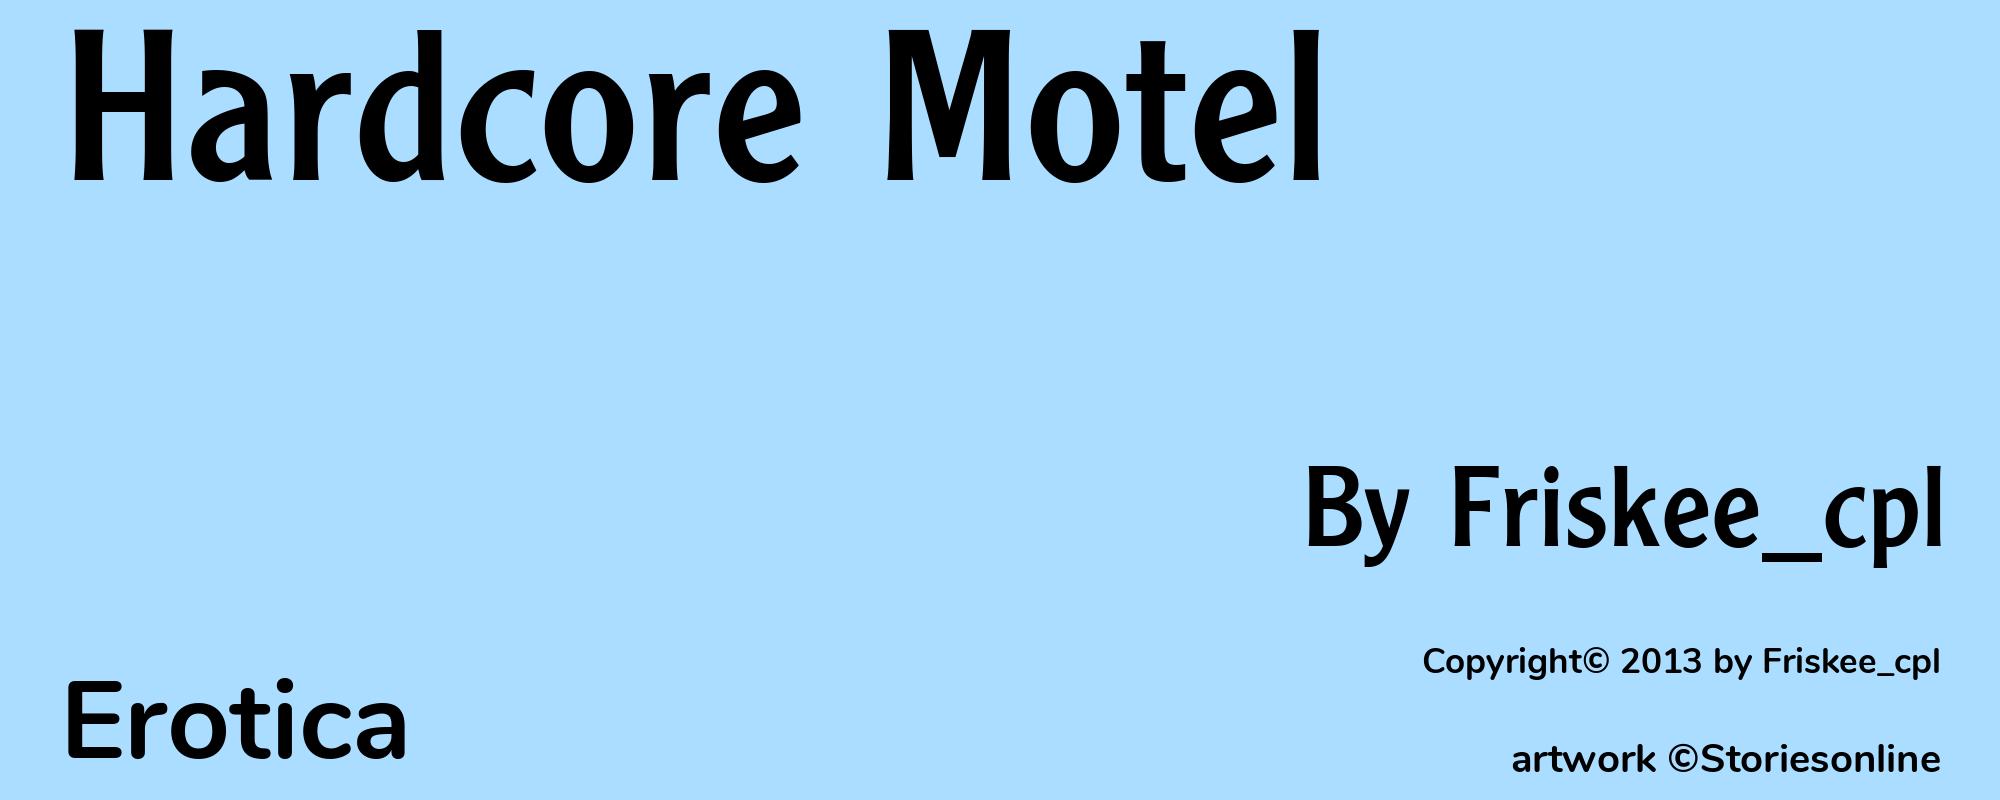 Hardcore Motel - Cover